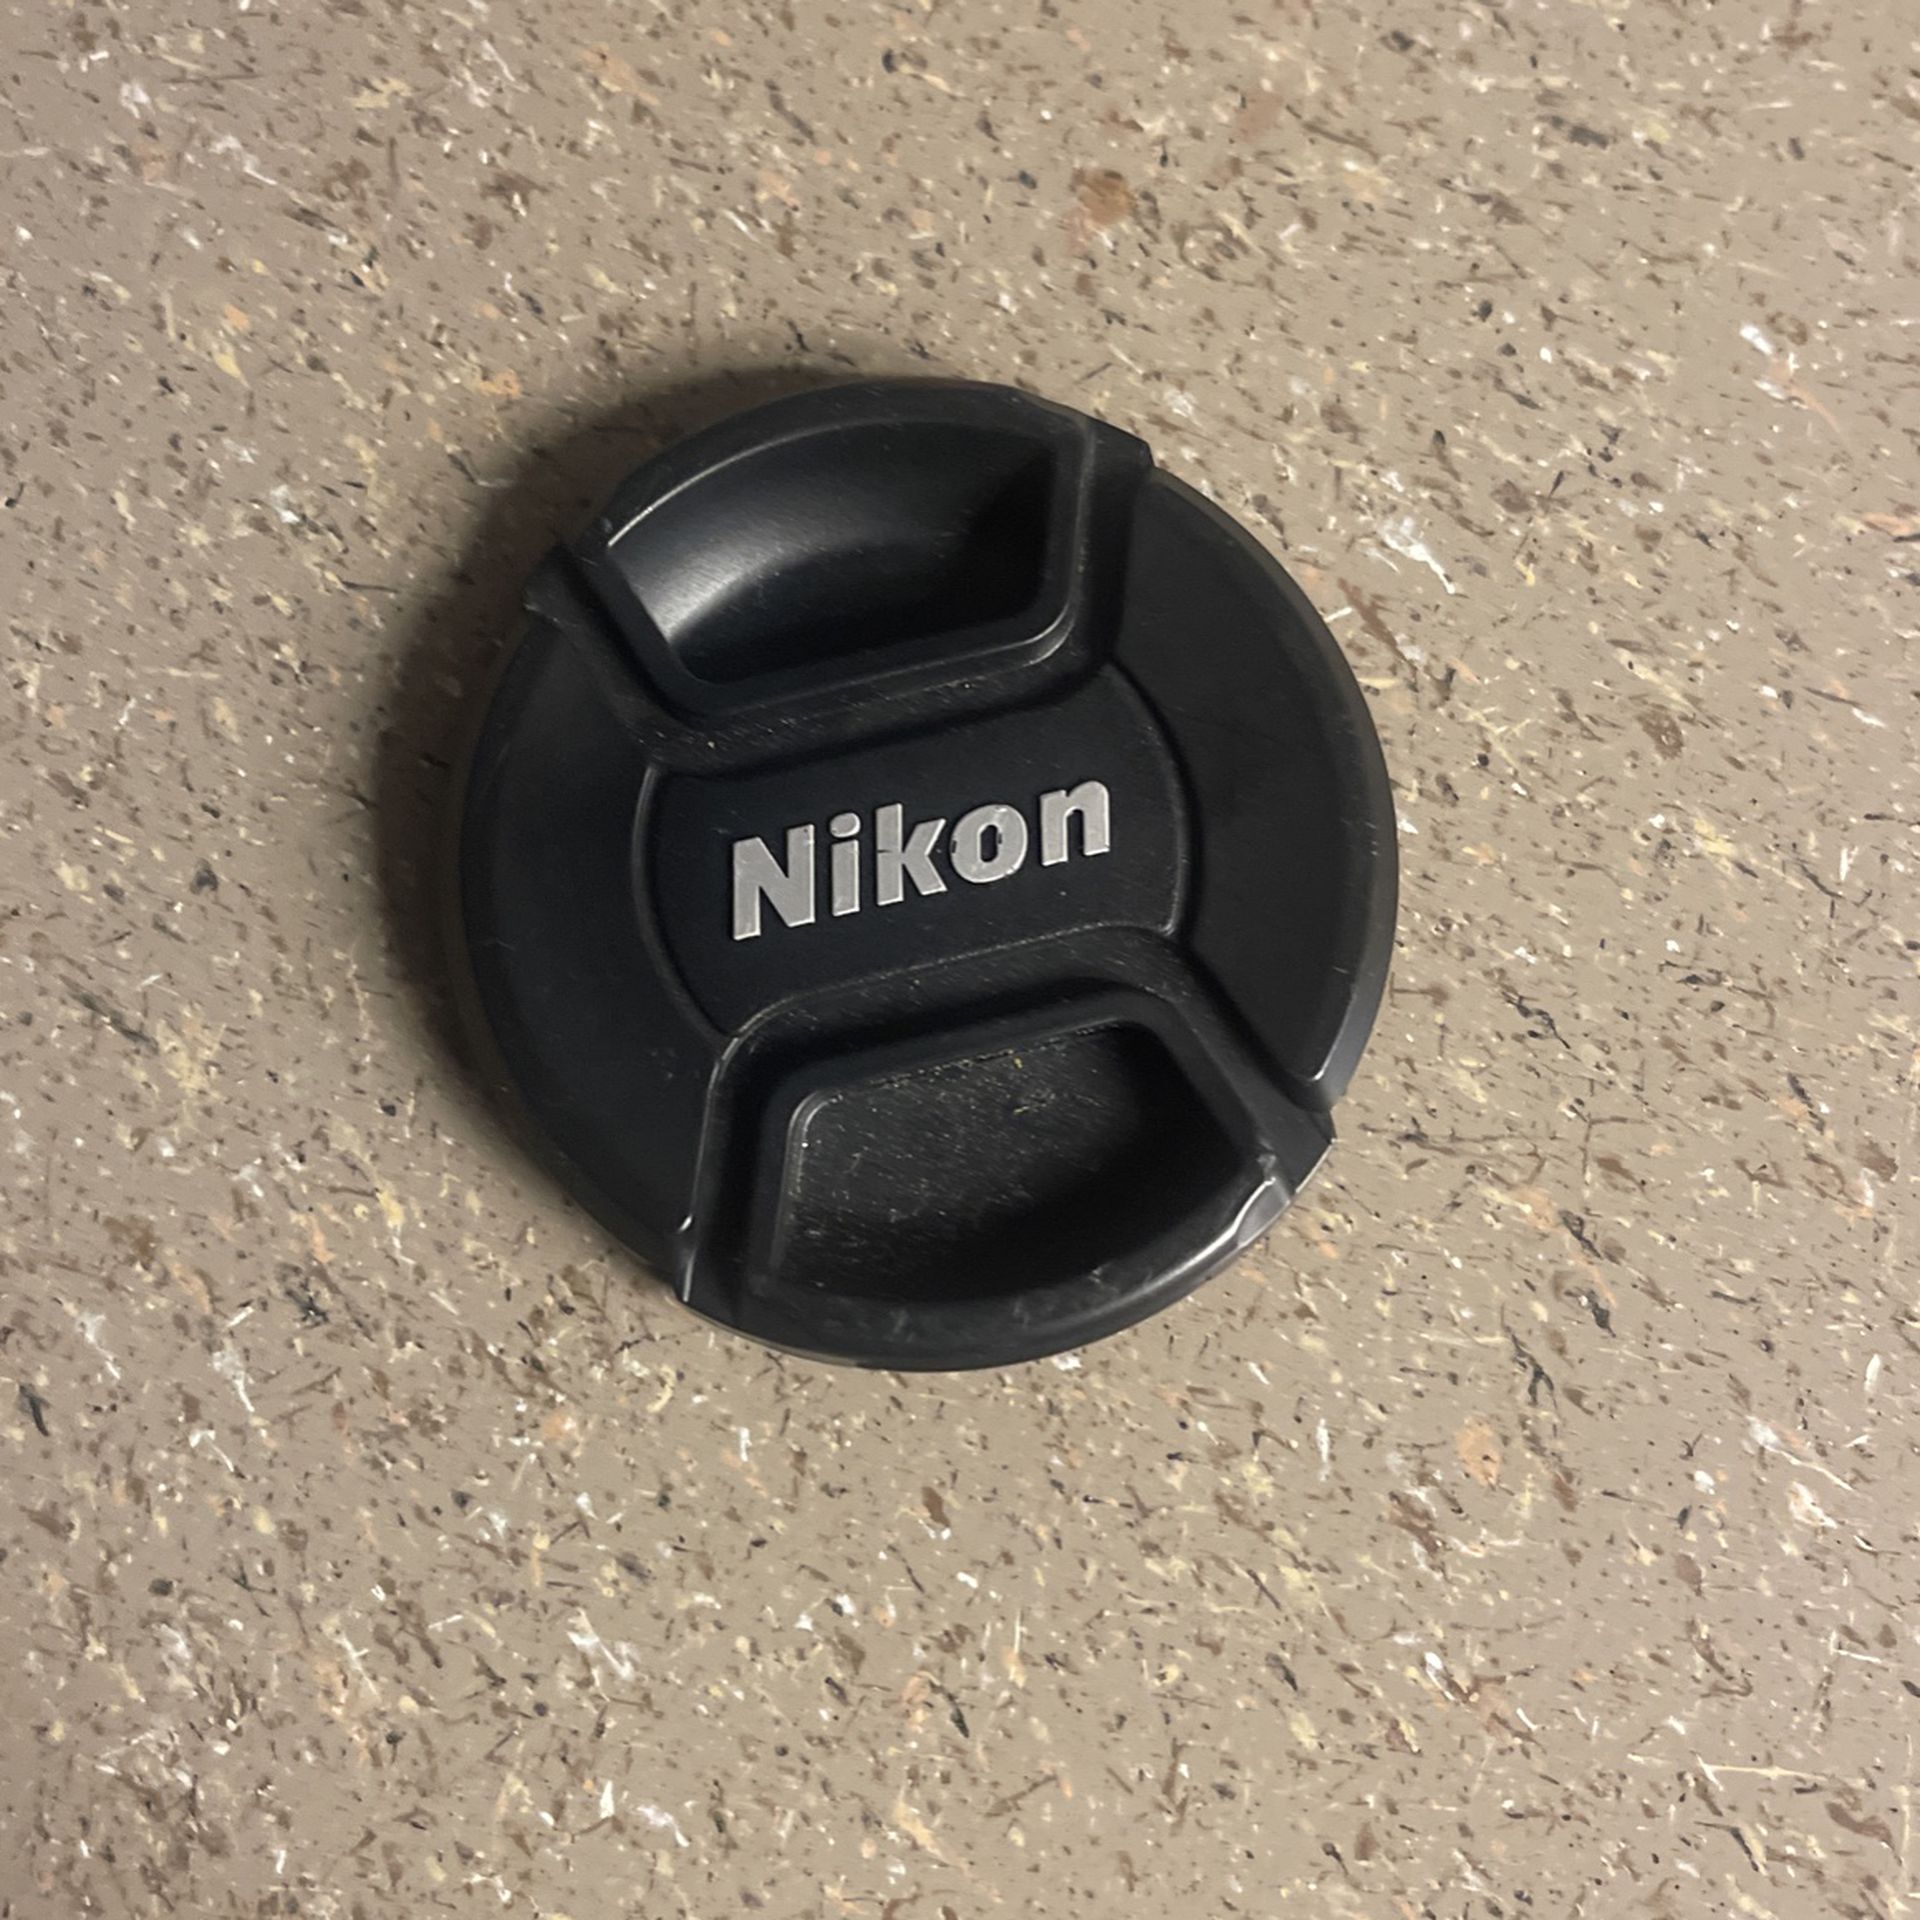 Nikon Lens Cap : 58mm